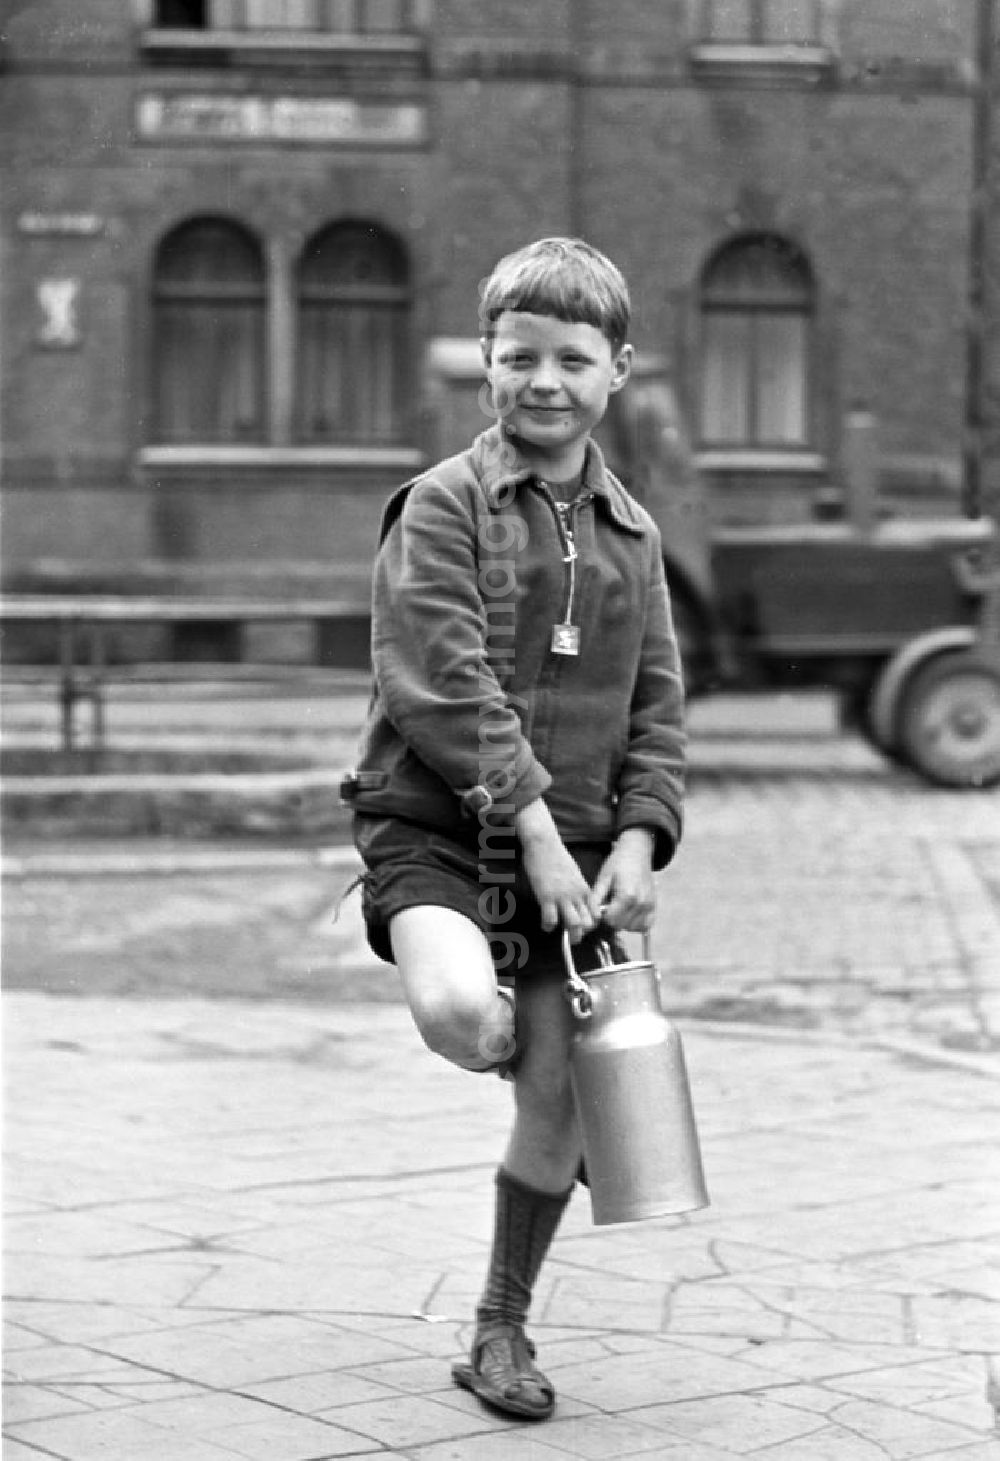 GDR image archive: Kahla - Junge mit Milchkanne.